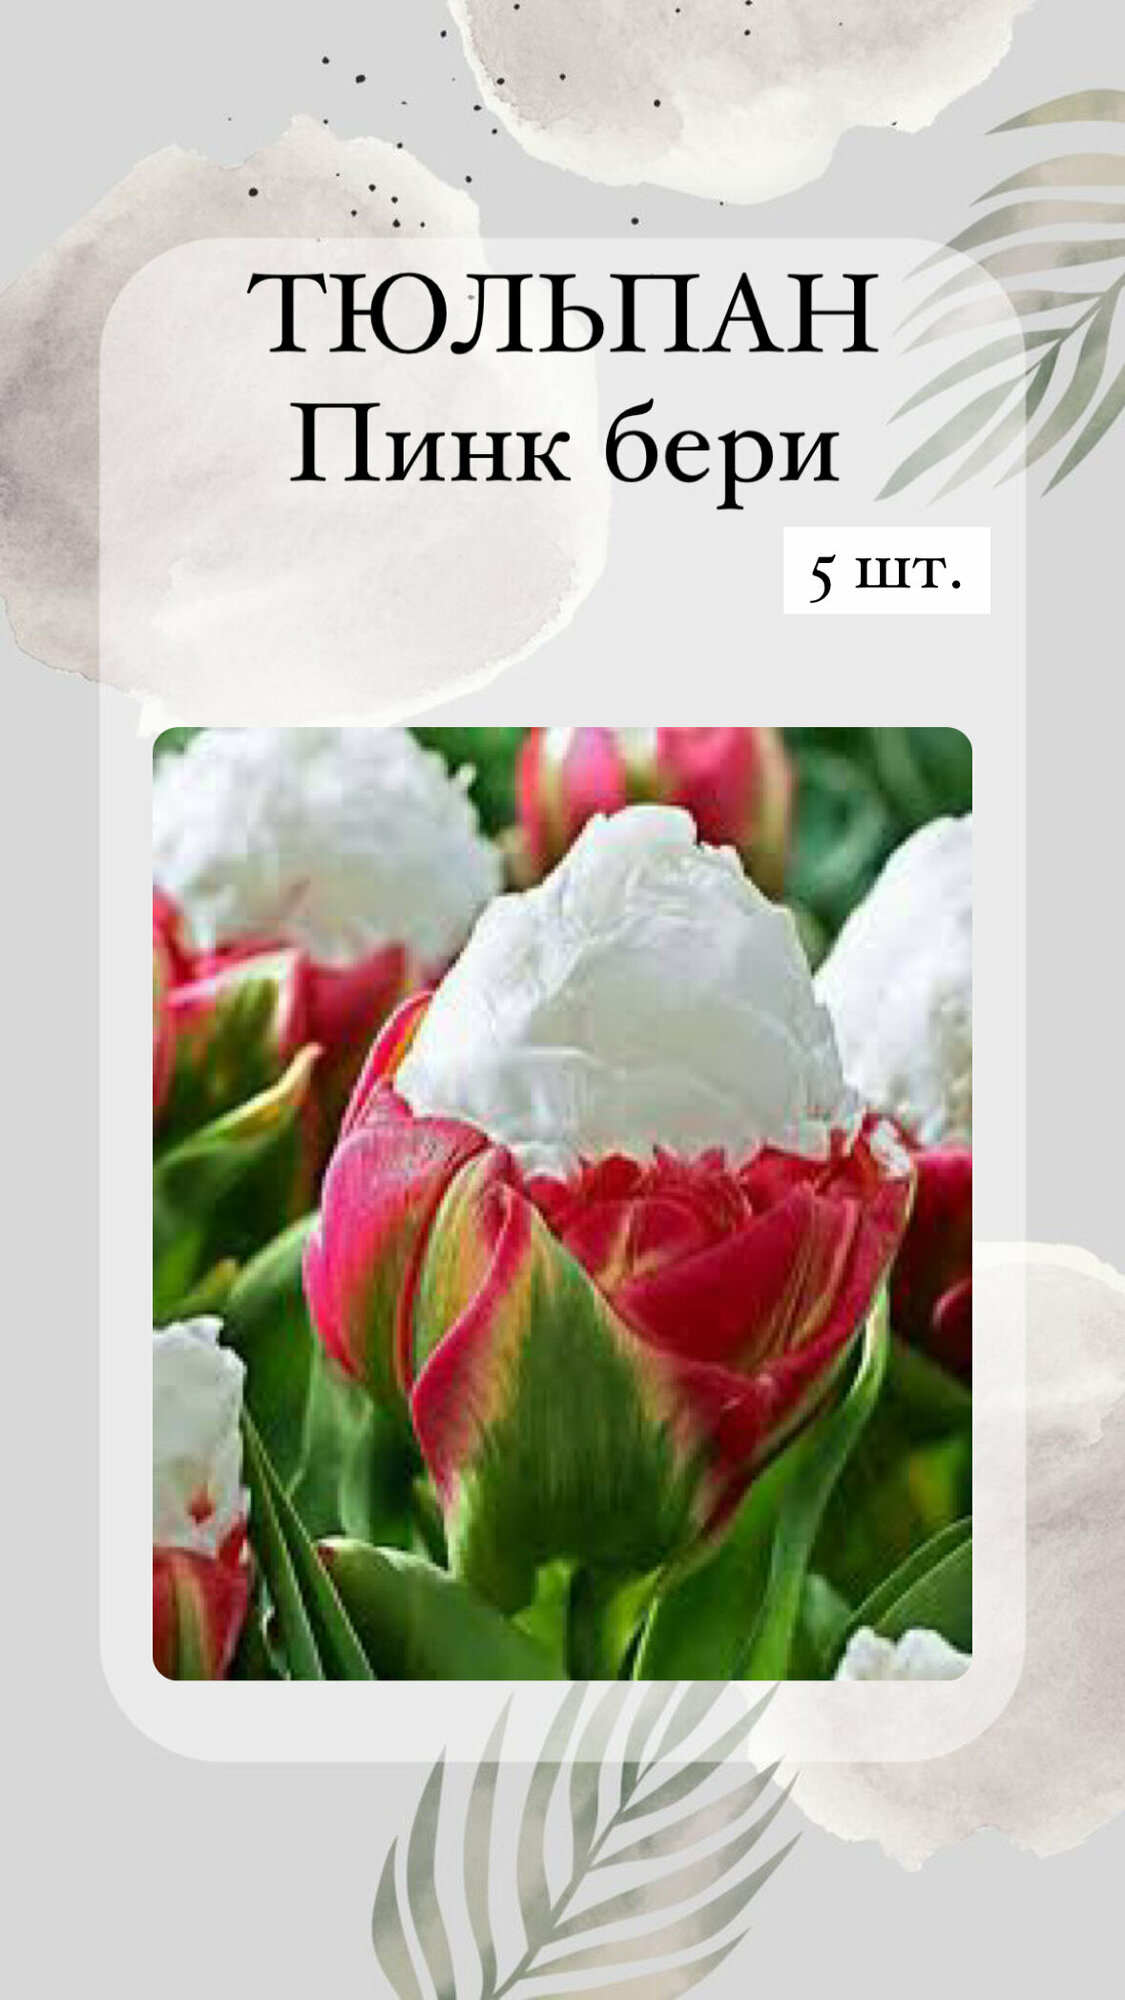 Тюльпан Пинк Бери луковицы многолетних цветов